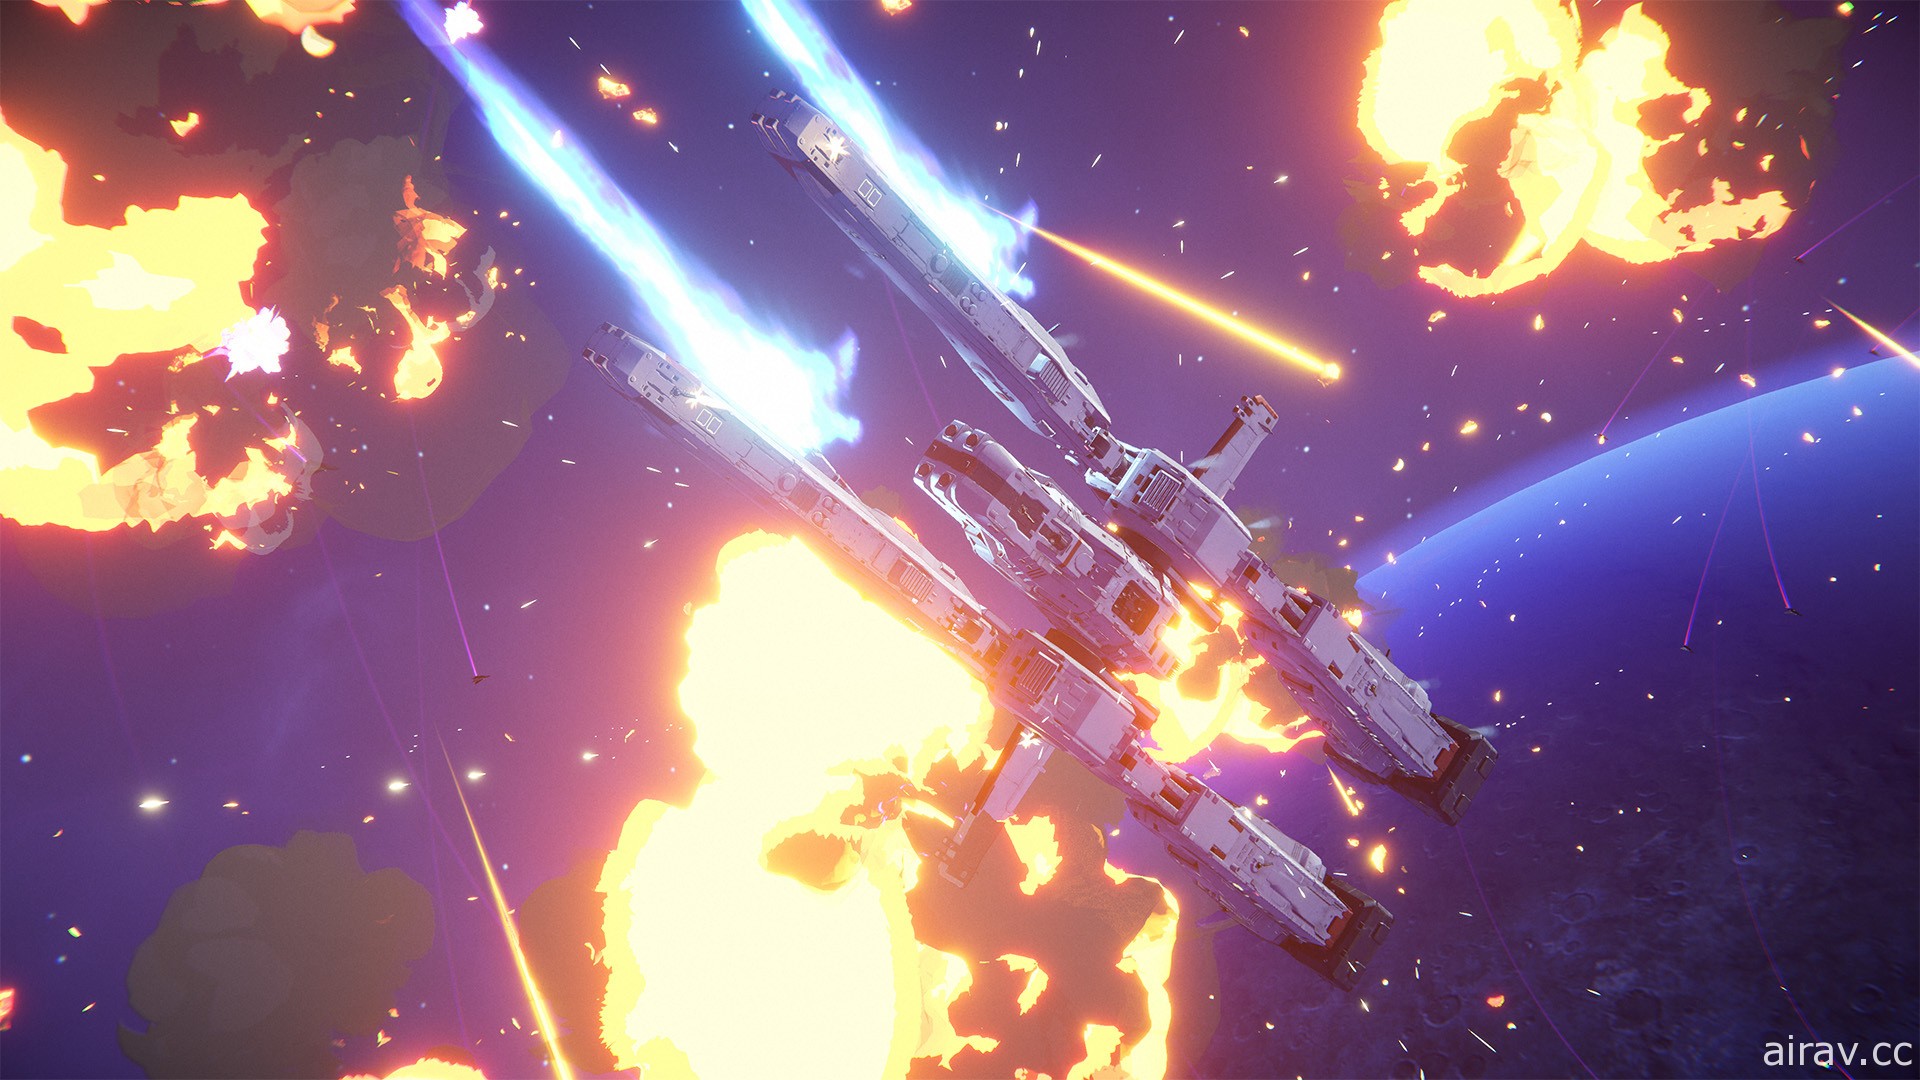 科幻線上即時戰略遊戲《無限艦隊》公開新預告影片「全面反擊」 揭露主要遊玩要素